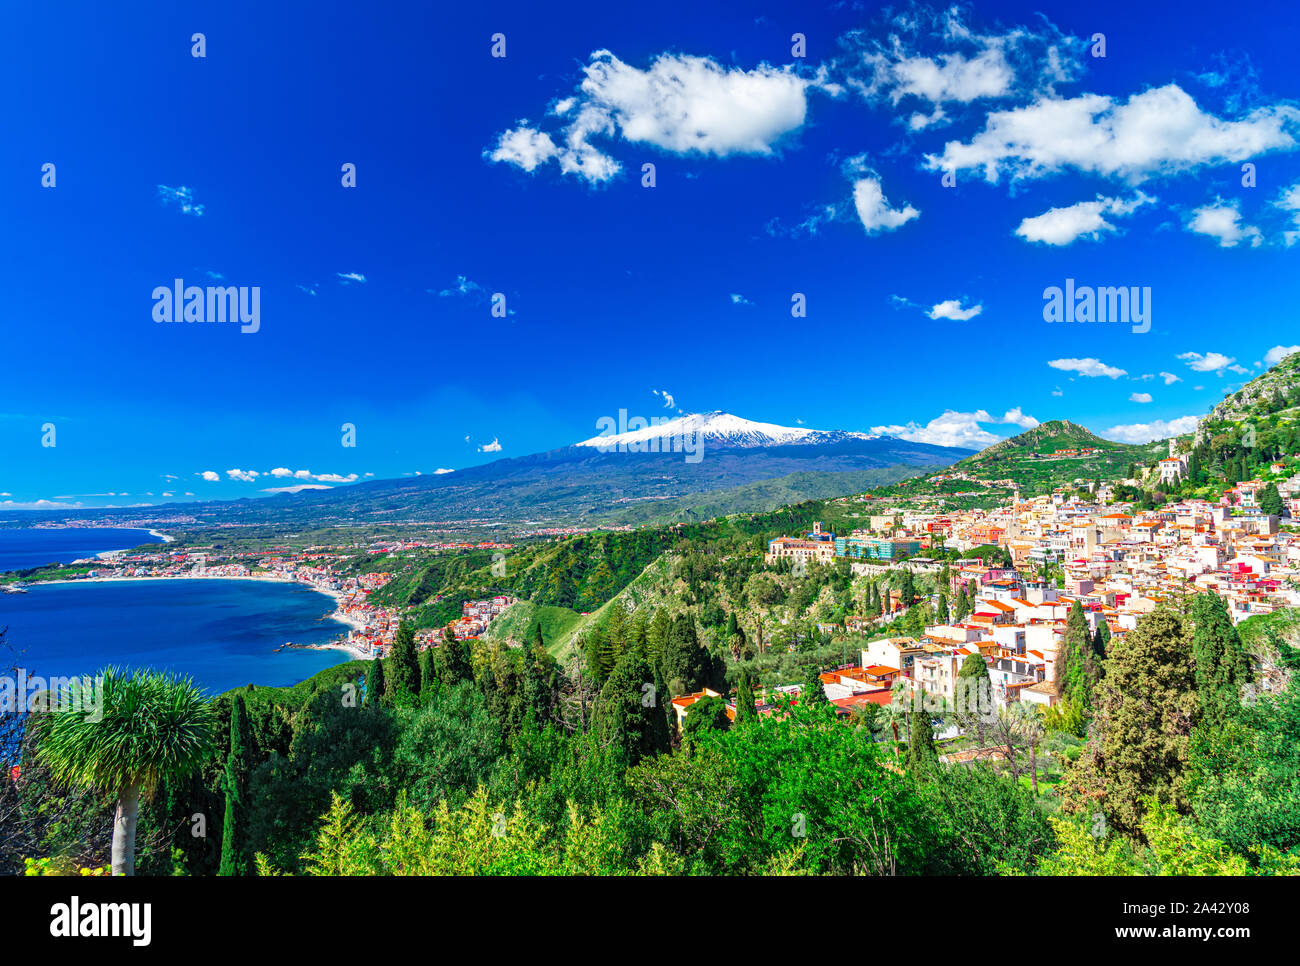 Taormina, Sicile, Italie : Vue panoramique du sommet du théâtre grec, Giardini Naxos avec l'Etna et Taormina, dans un beau jour. Banque D'Images